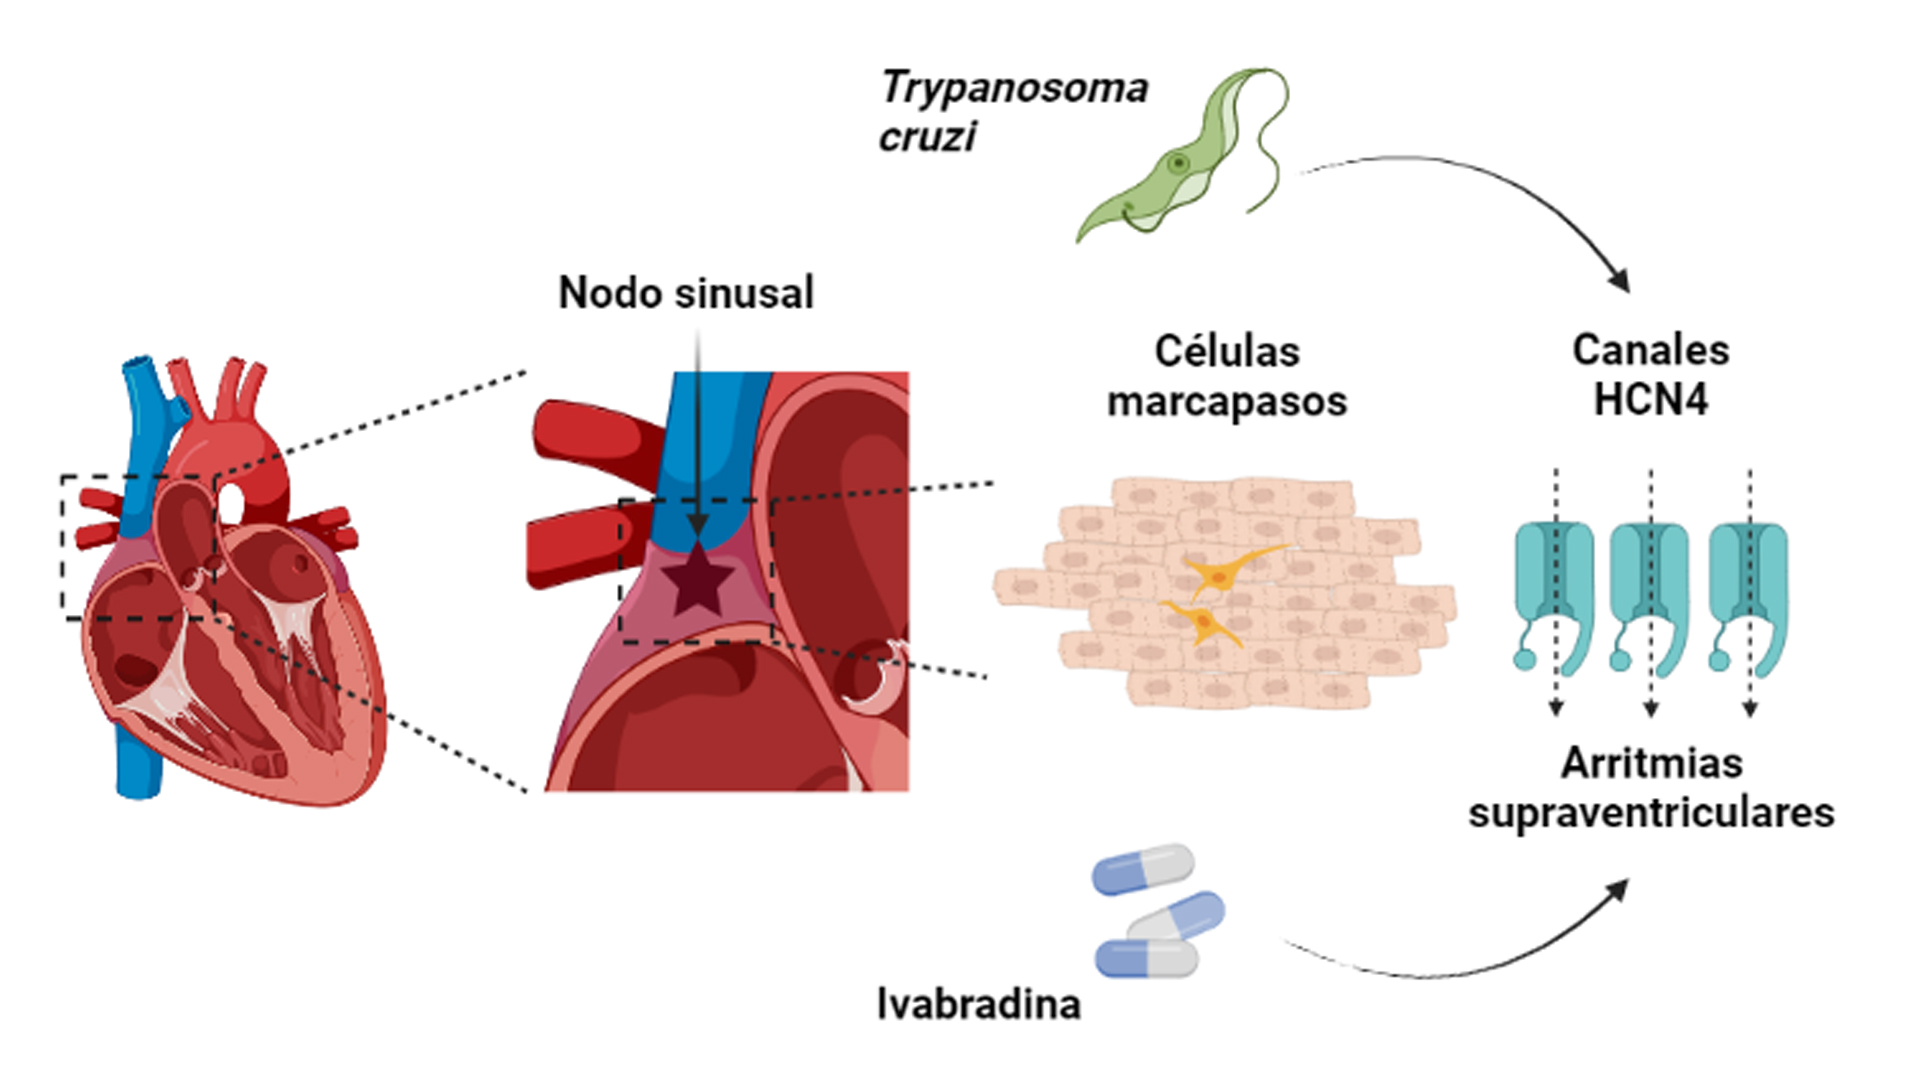 Imagen que muestra la ubicación del nodo sinusal en el corazón y la morfología de las CM en el tejido cardiaco. La infección por T. cruzi aumenta la expresión de los canales HCN4 de las CM. En estas condiciones el tratamiento con Ivabradina puede dar lugar a la aparición de arritmias supraventriculares.